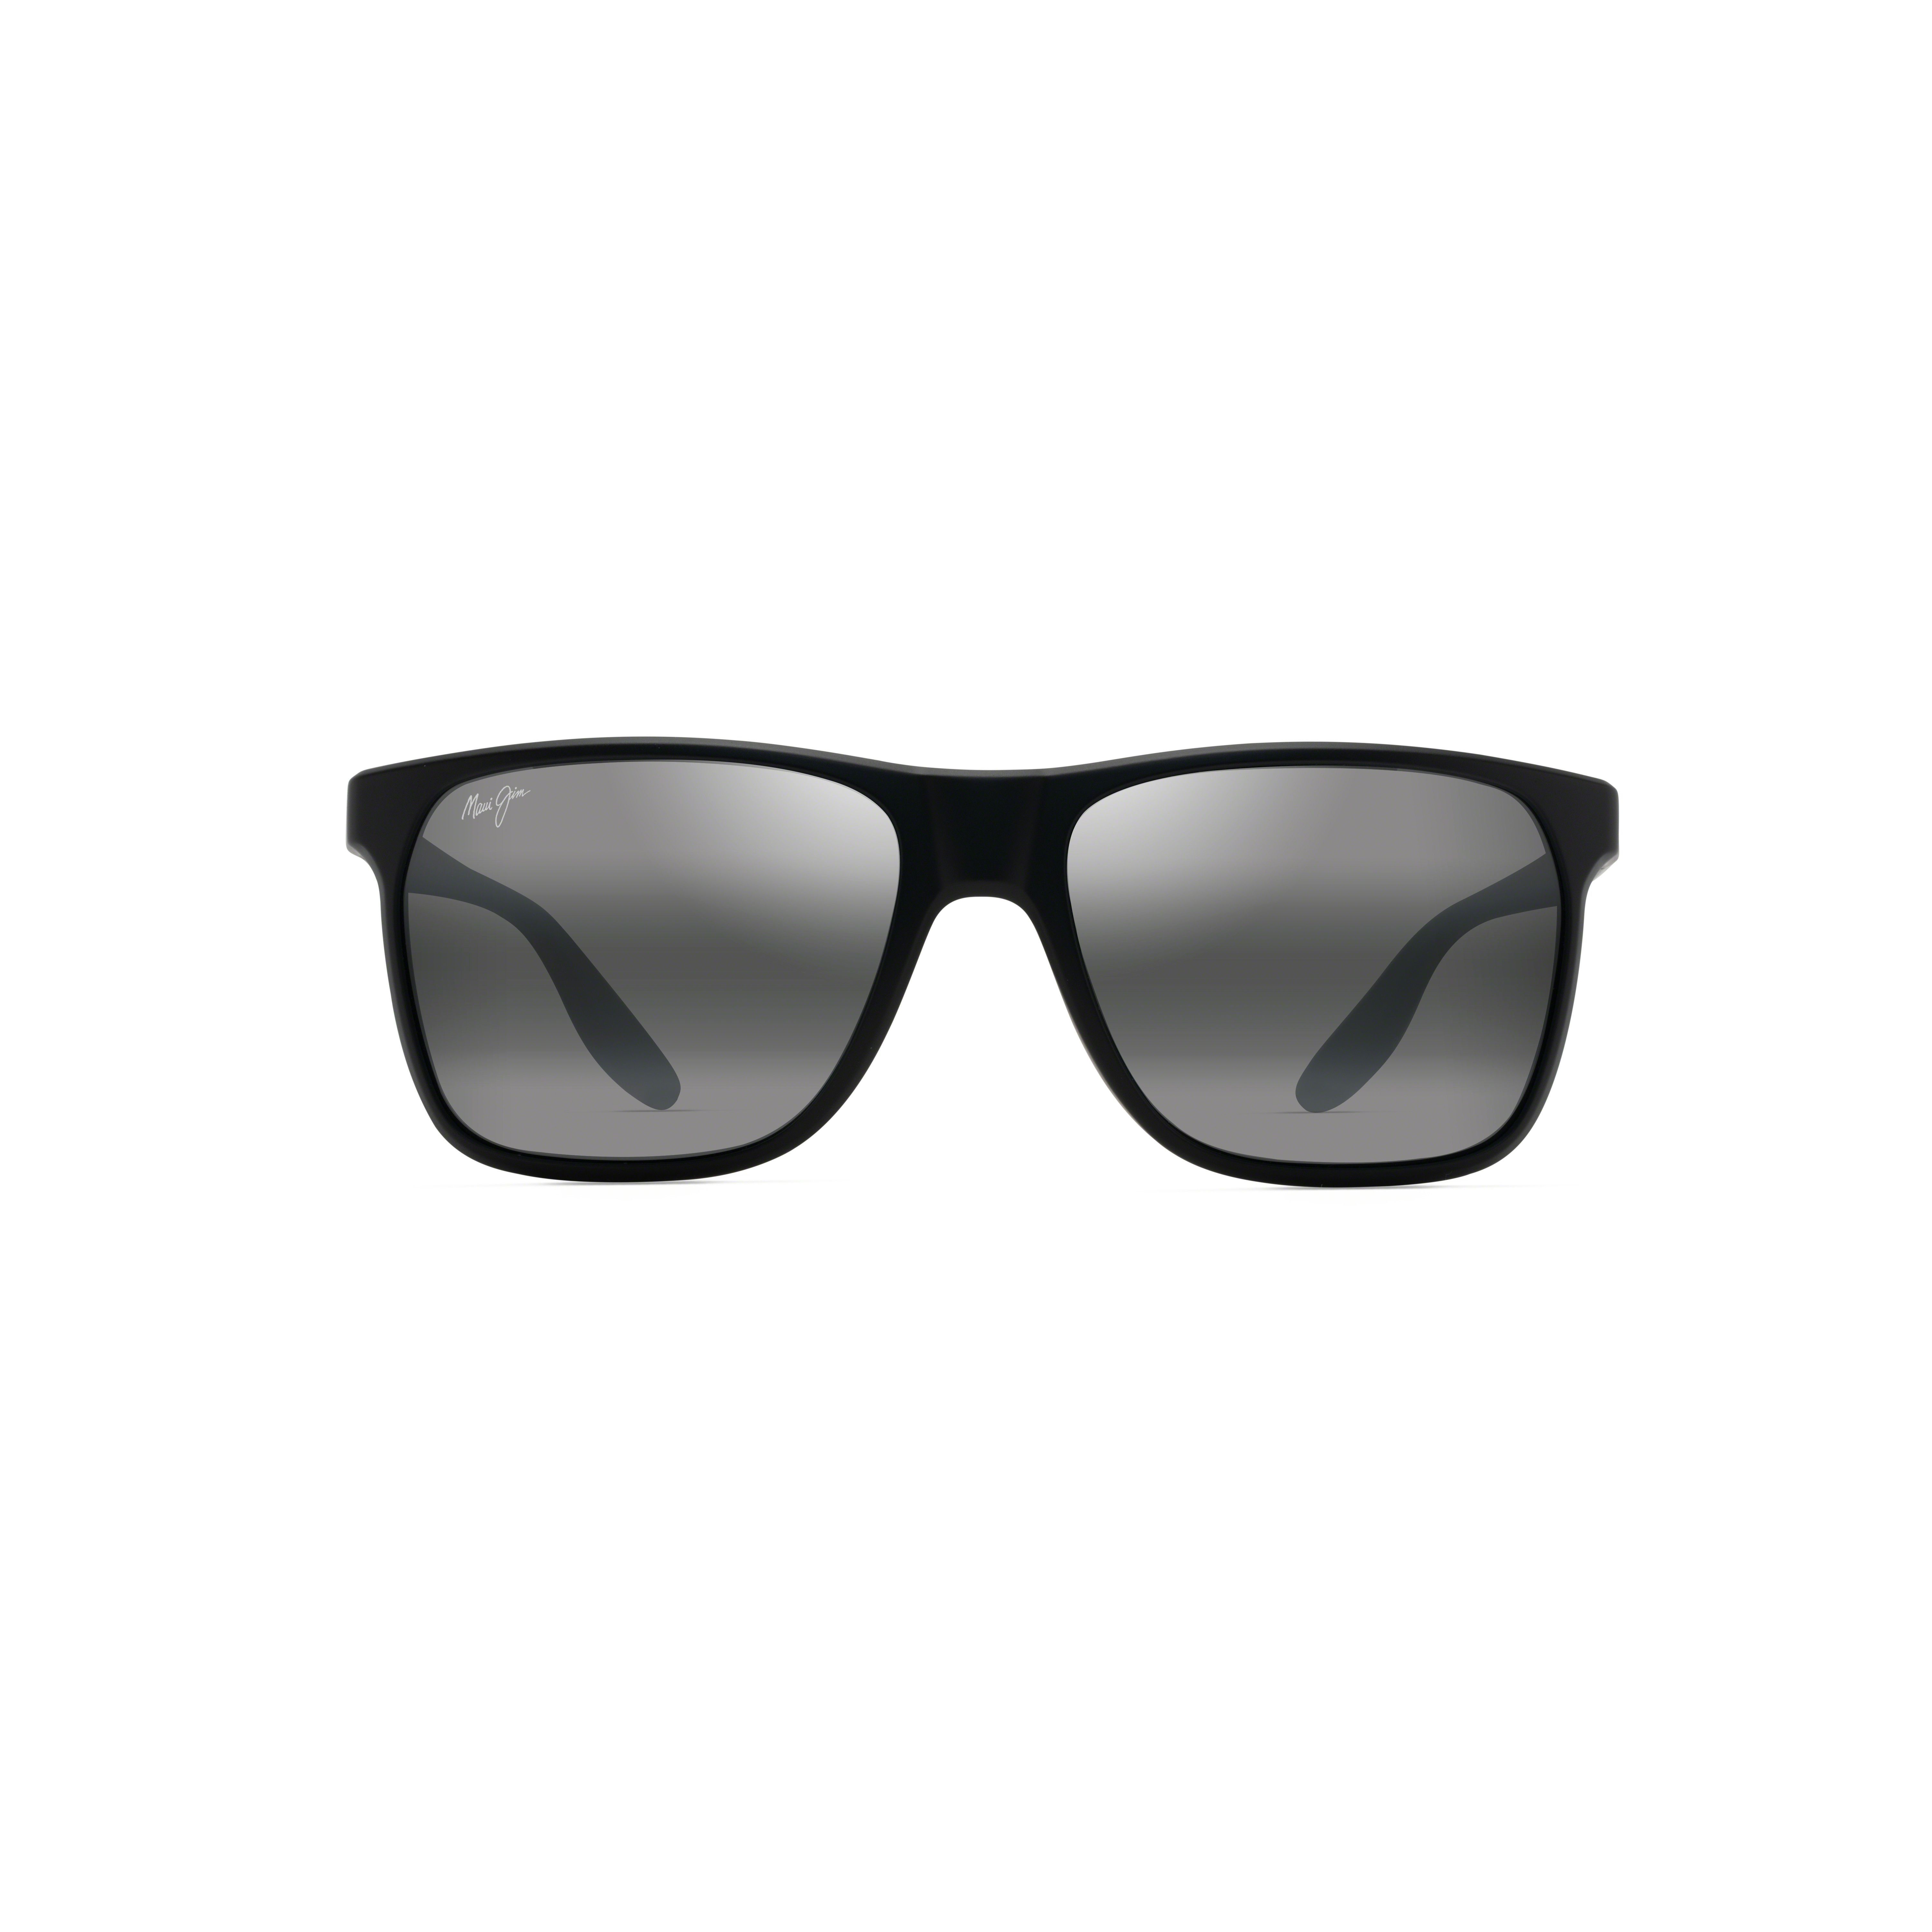 PAILOLO Square Sunglasses 603-02 - size 59